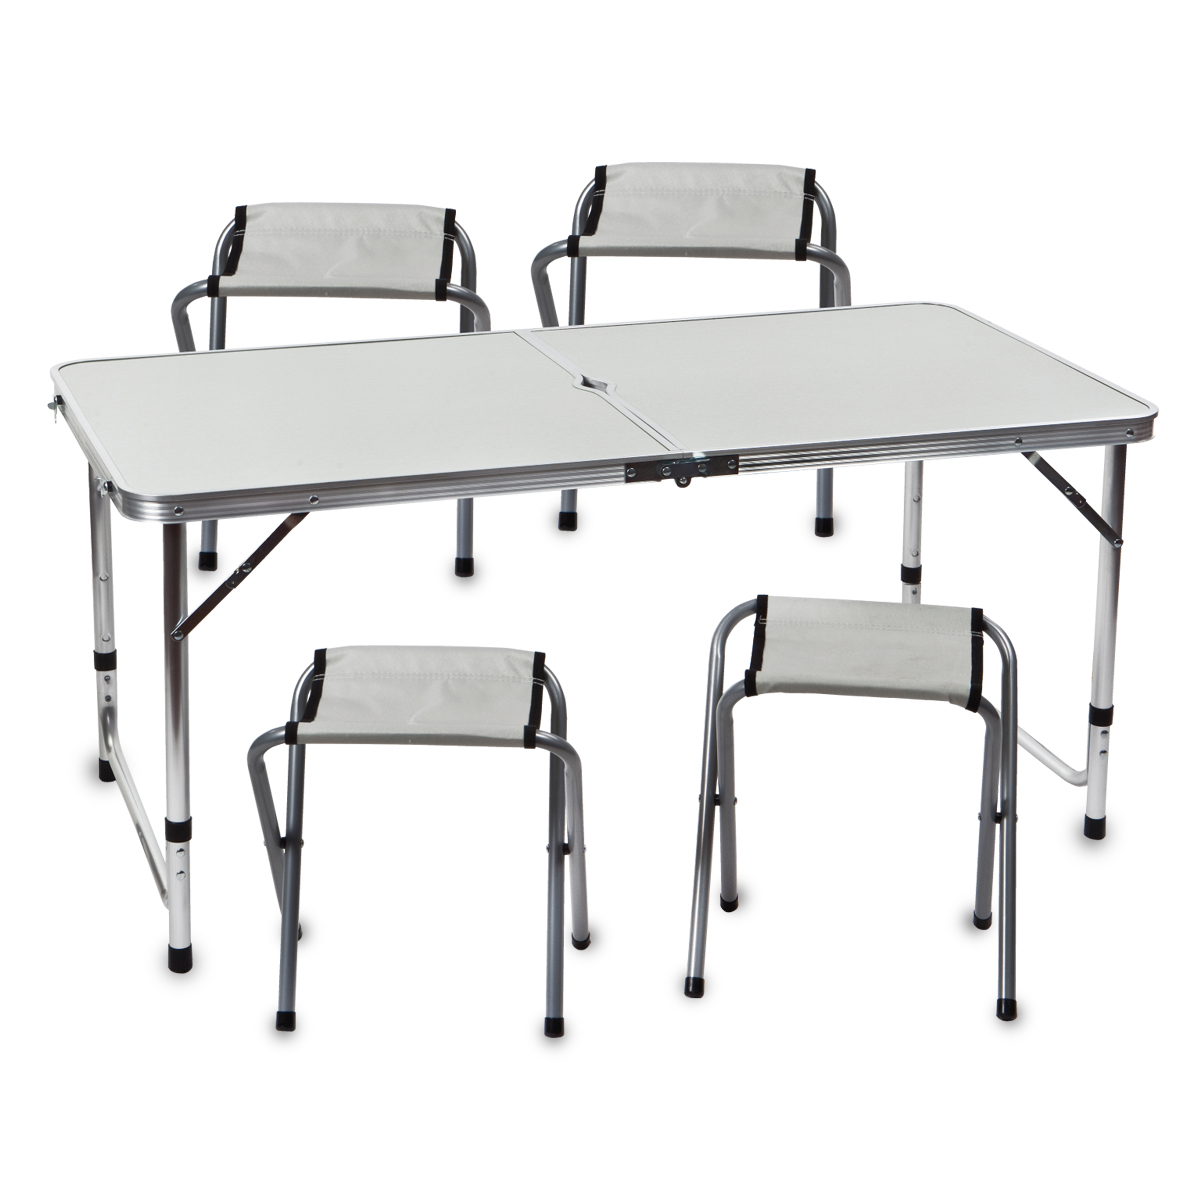 סקוייה - שולחן מתקפל עם 4 כסאות, 
גודל השולחן 70x60x120 ס“מ, כסאות עם בד אוקספורד, עד 100 ק